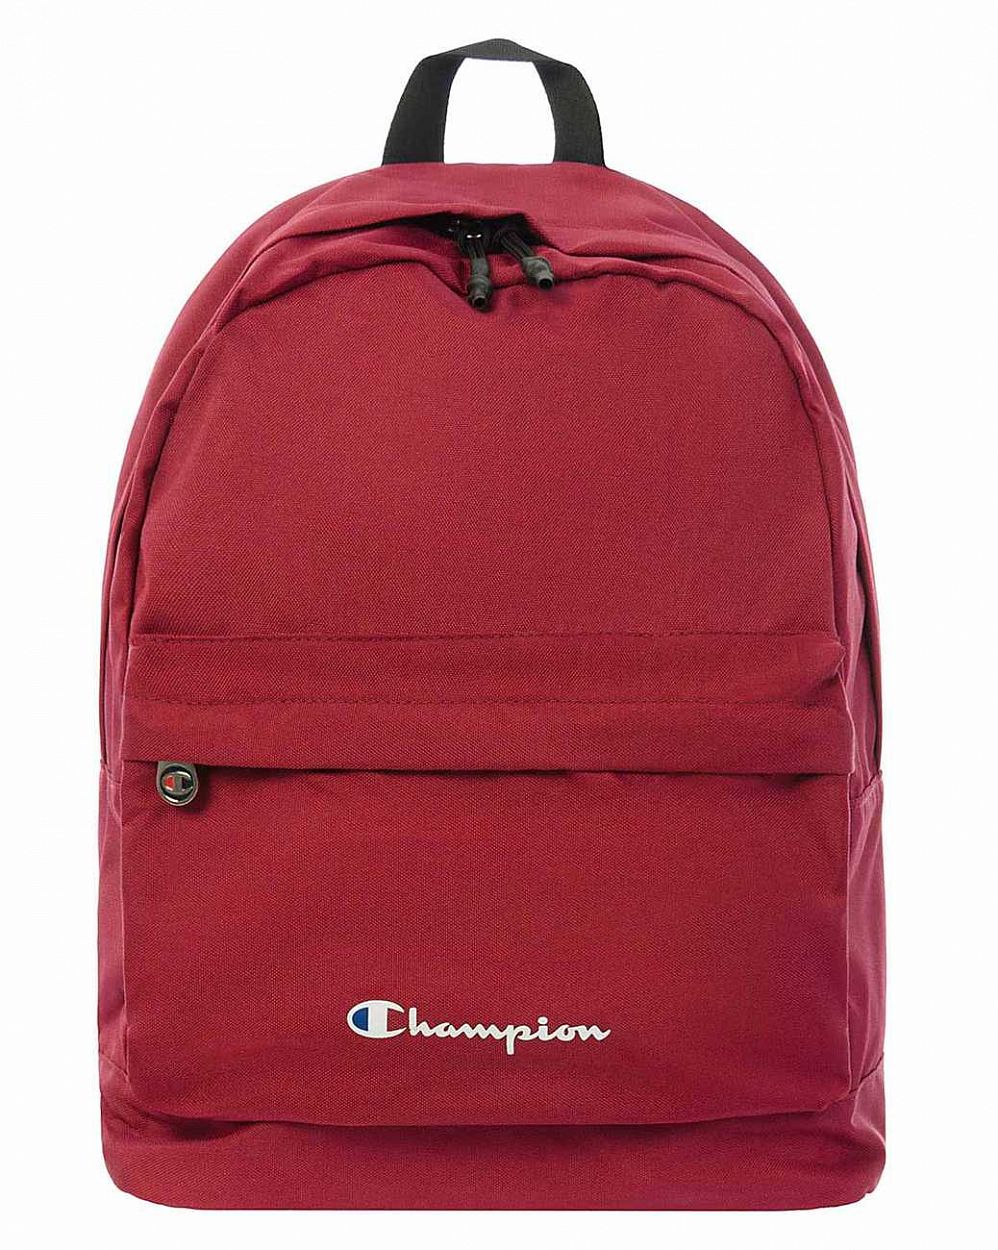 Рюкзак водостойкий с отделом для 13 ноутбука Champion Classic Backpack Maroon отзывы